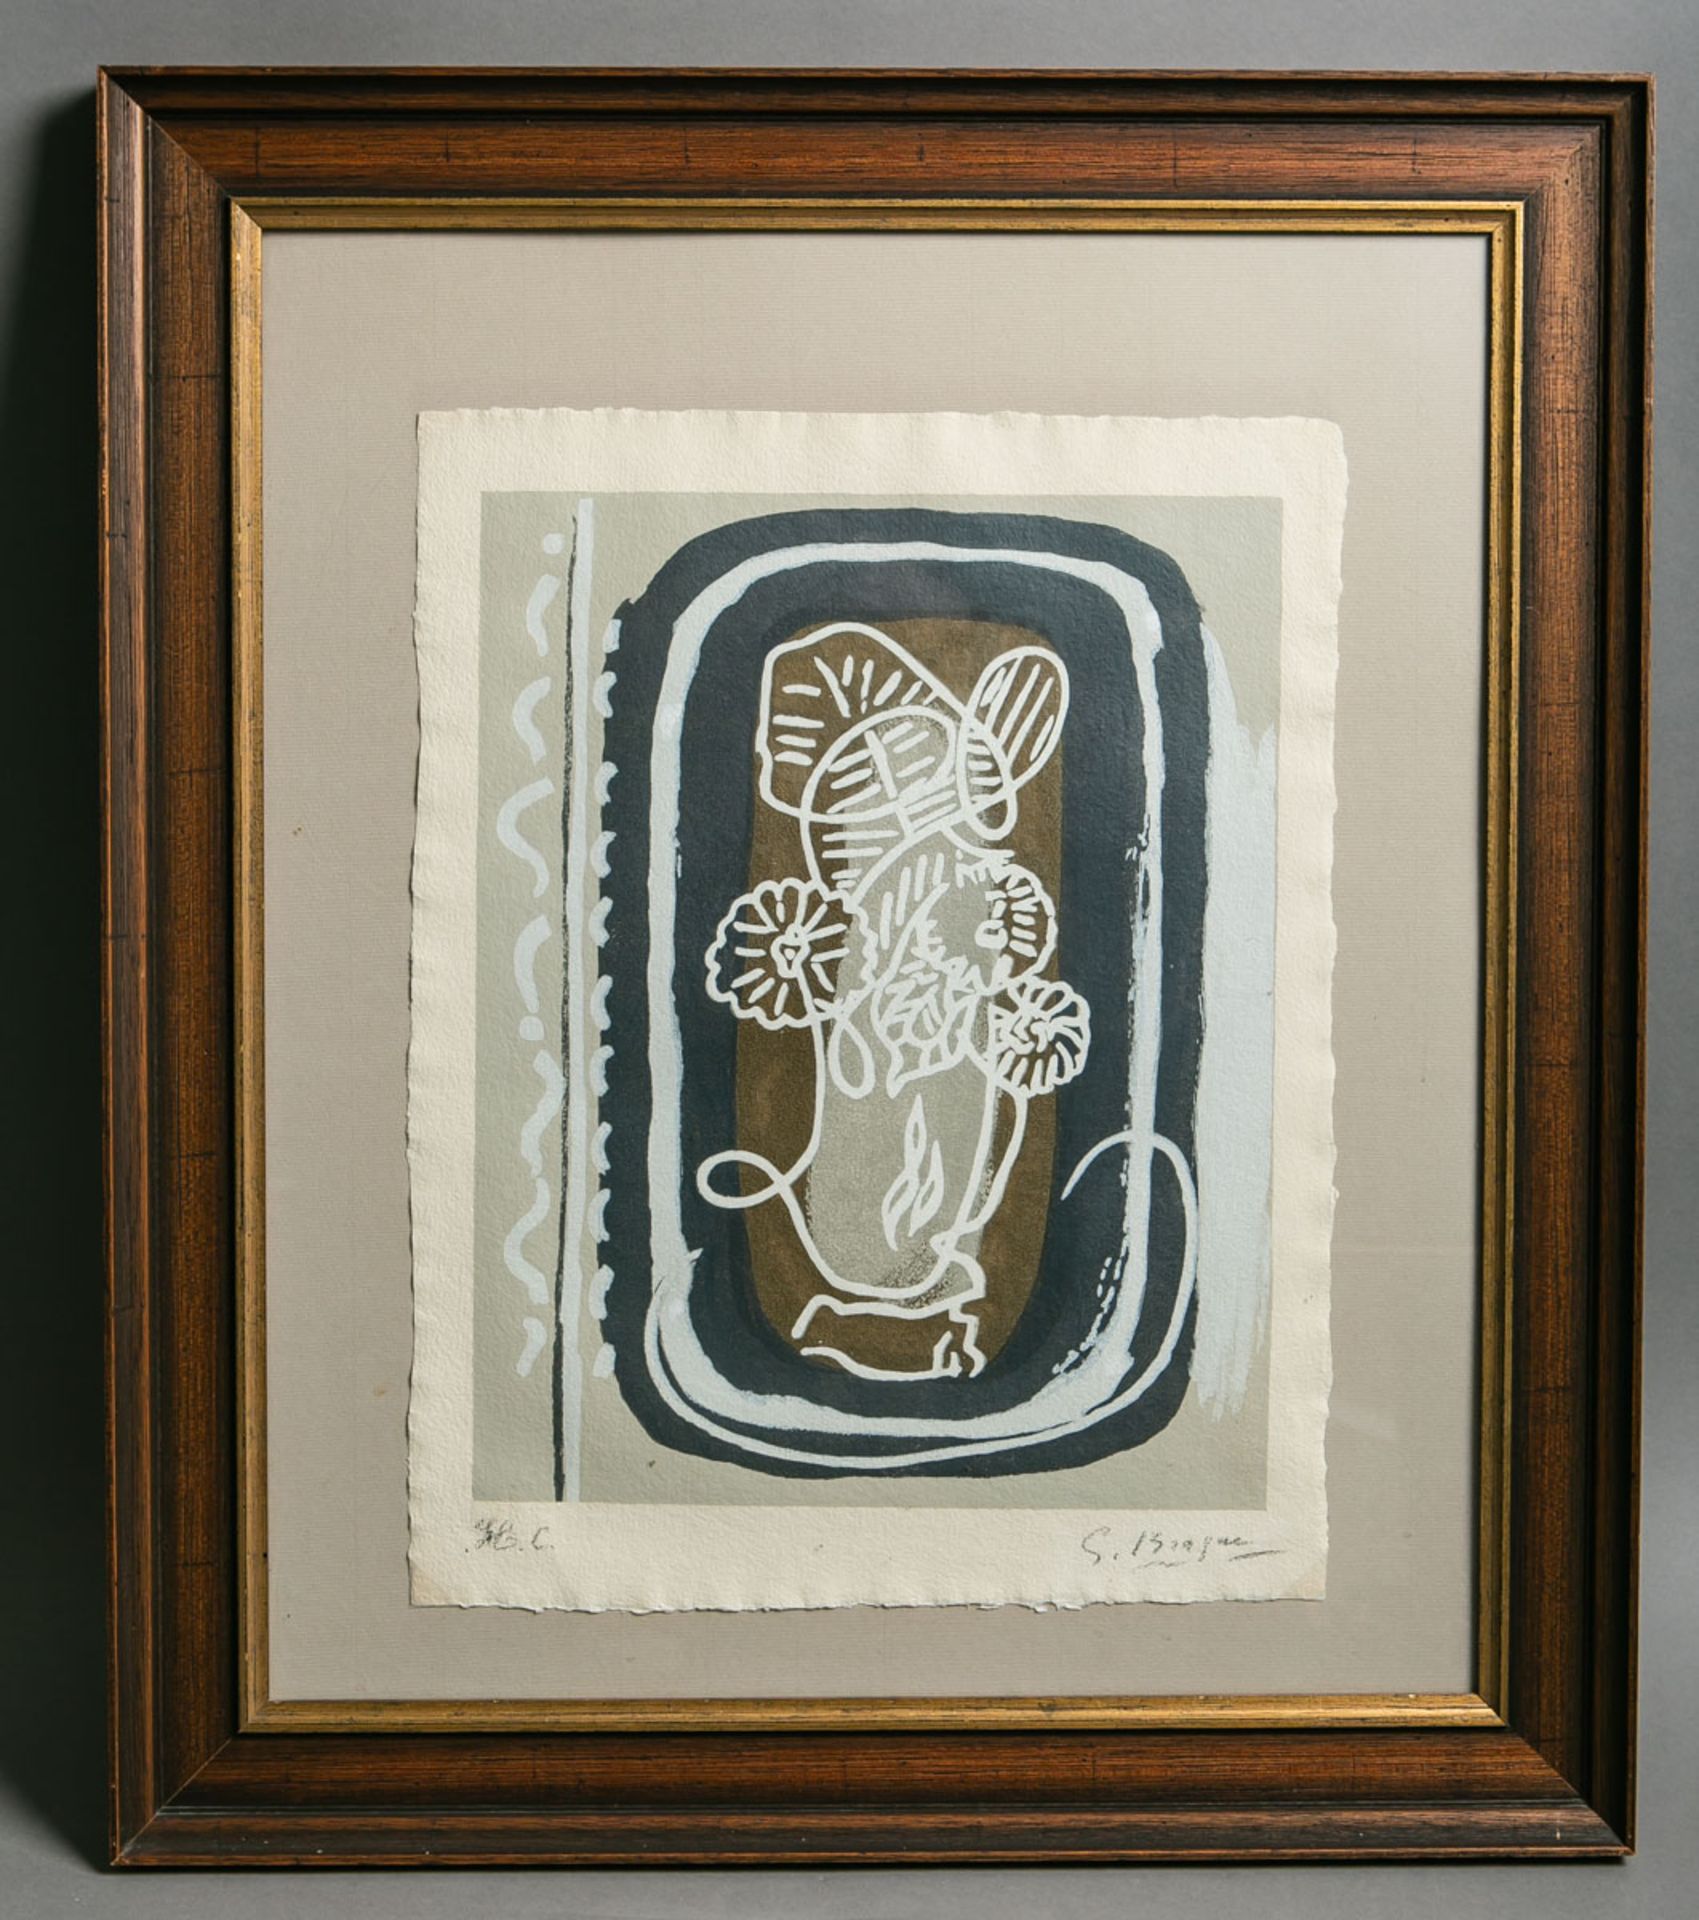 Braques, Georges (1882 - 1963), "Vase de fleurs blanc" (1962)